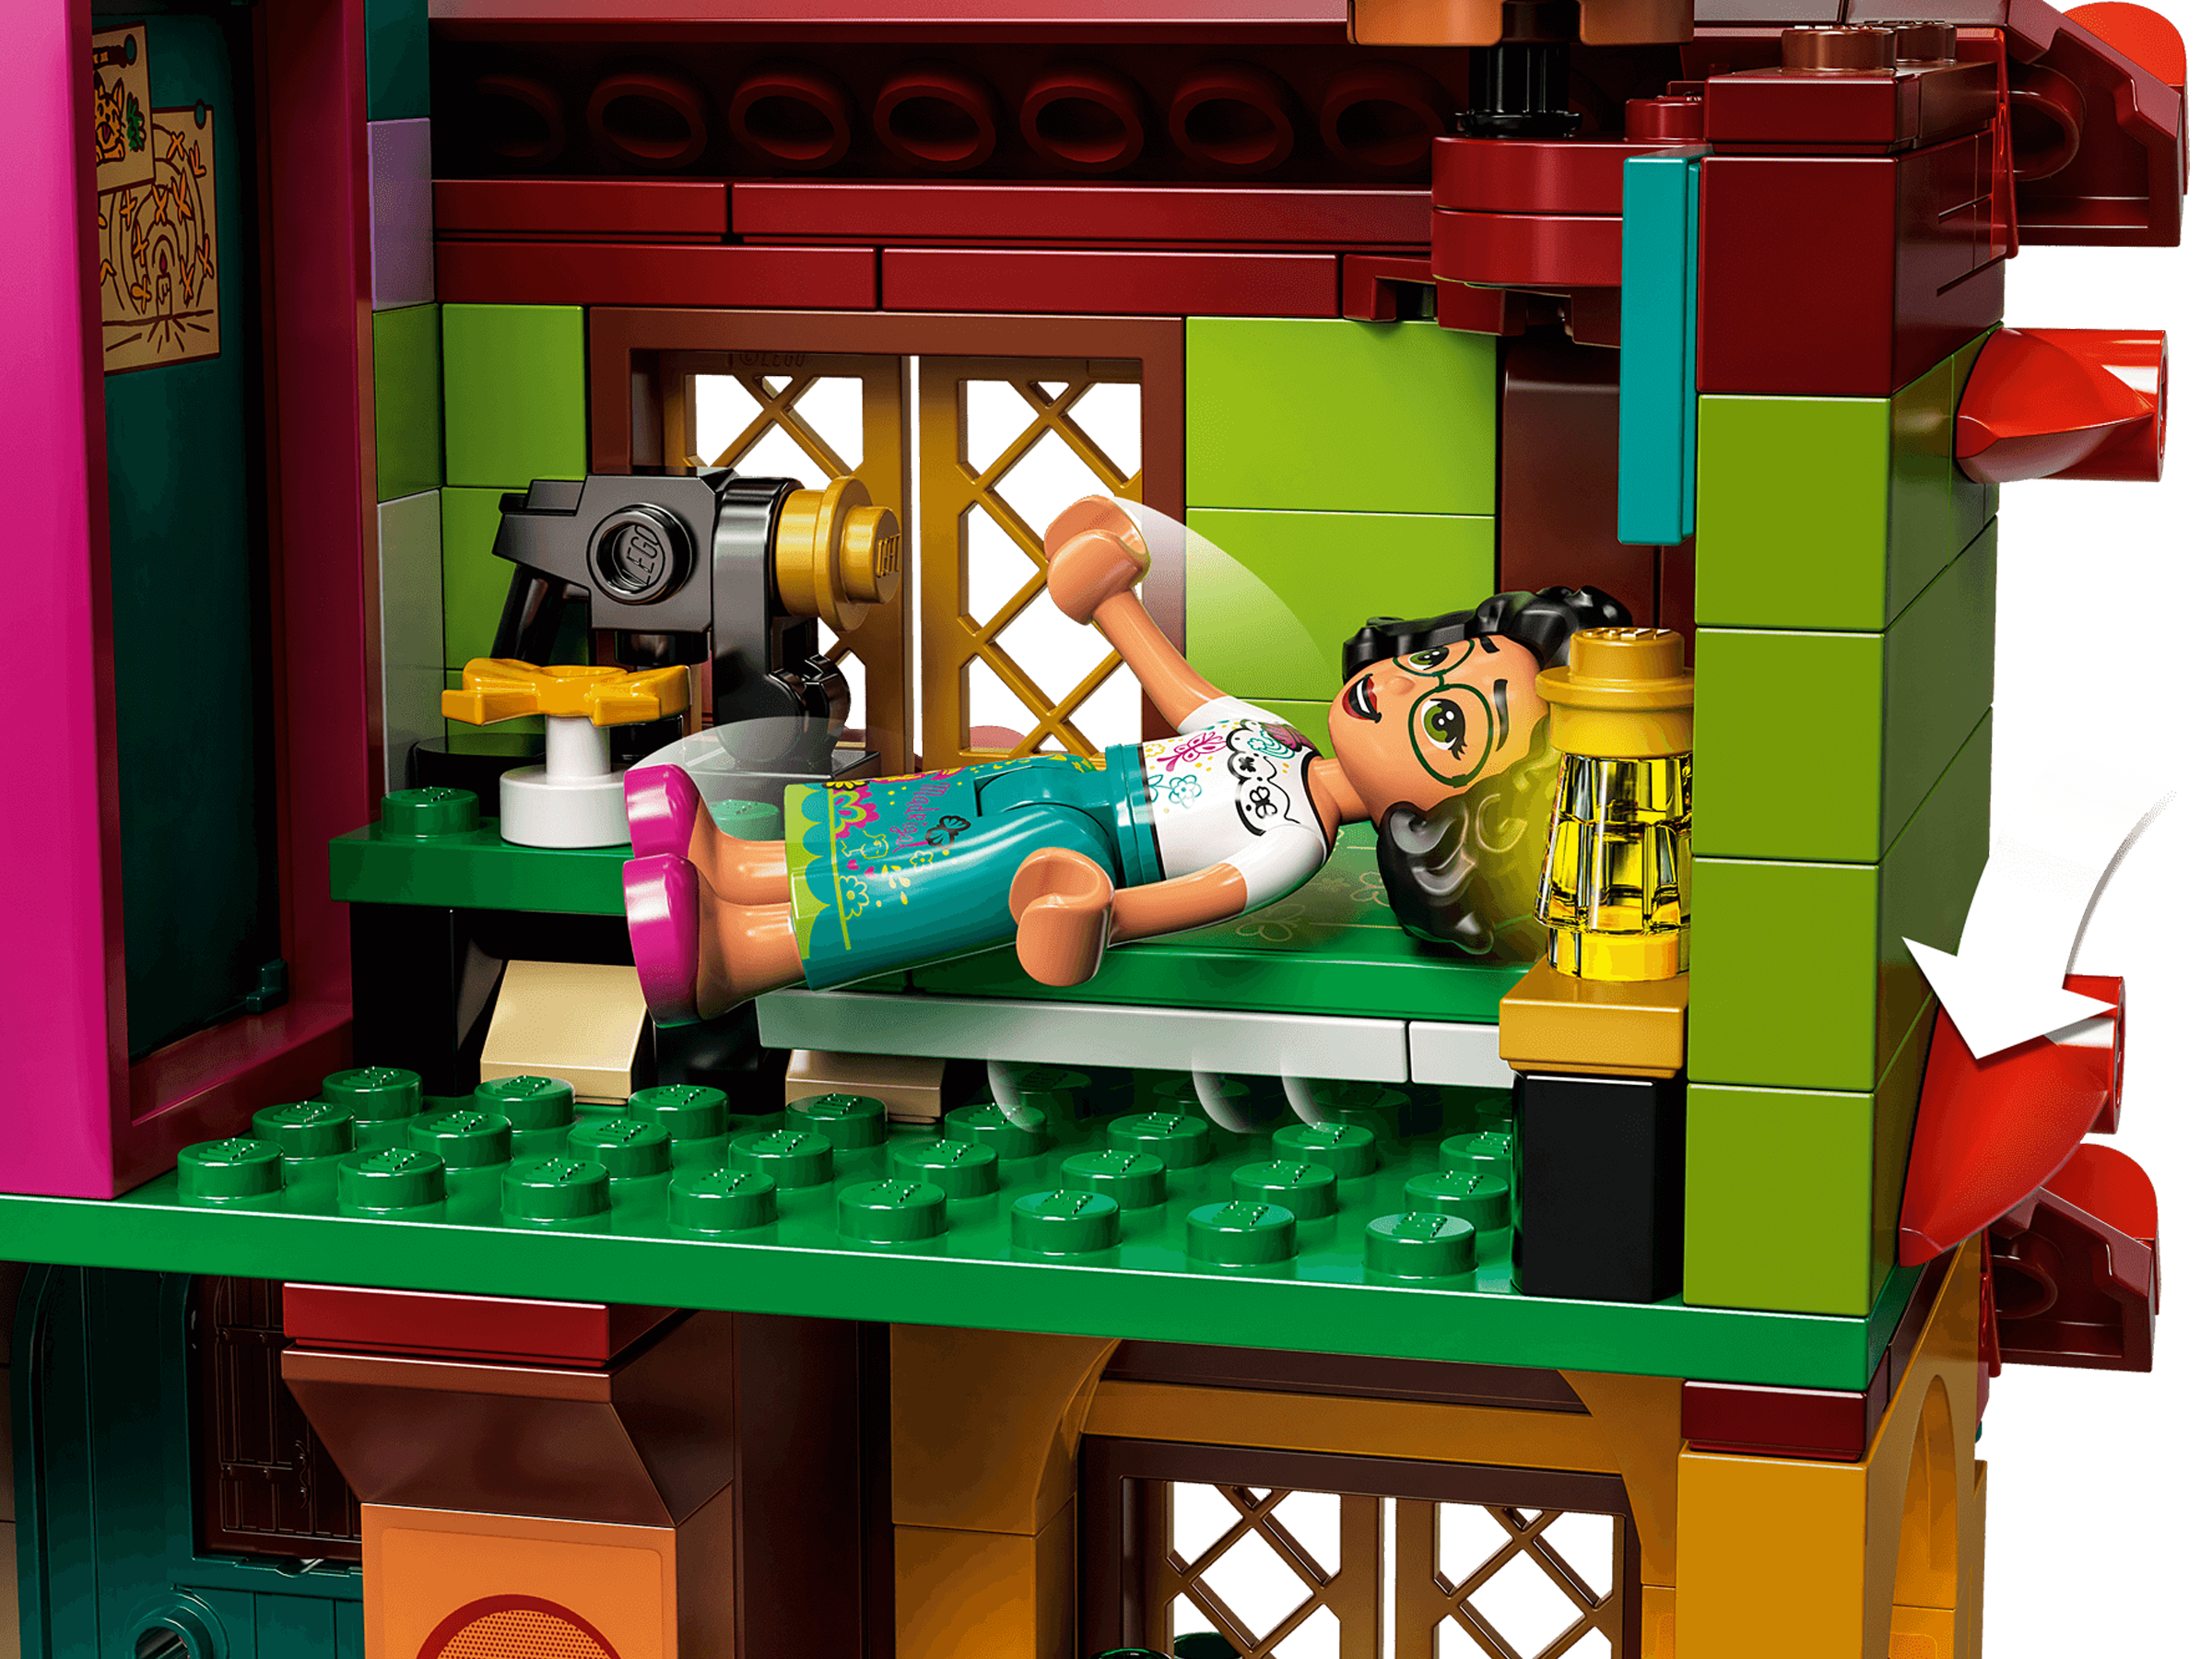 Lego 43202 disney princess la maison madrigal, jouet de construction,  mini-poupees, idee de cadeau enfant +6 ans film encanto LEGO43202 -  Conforama